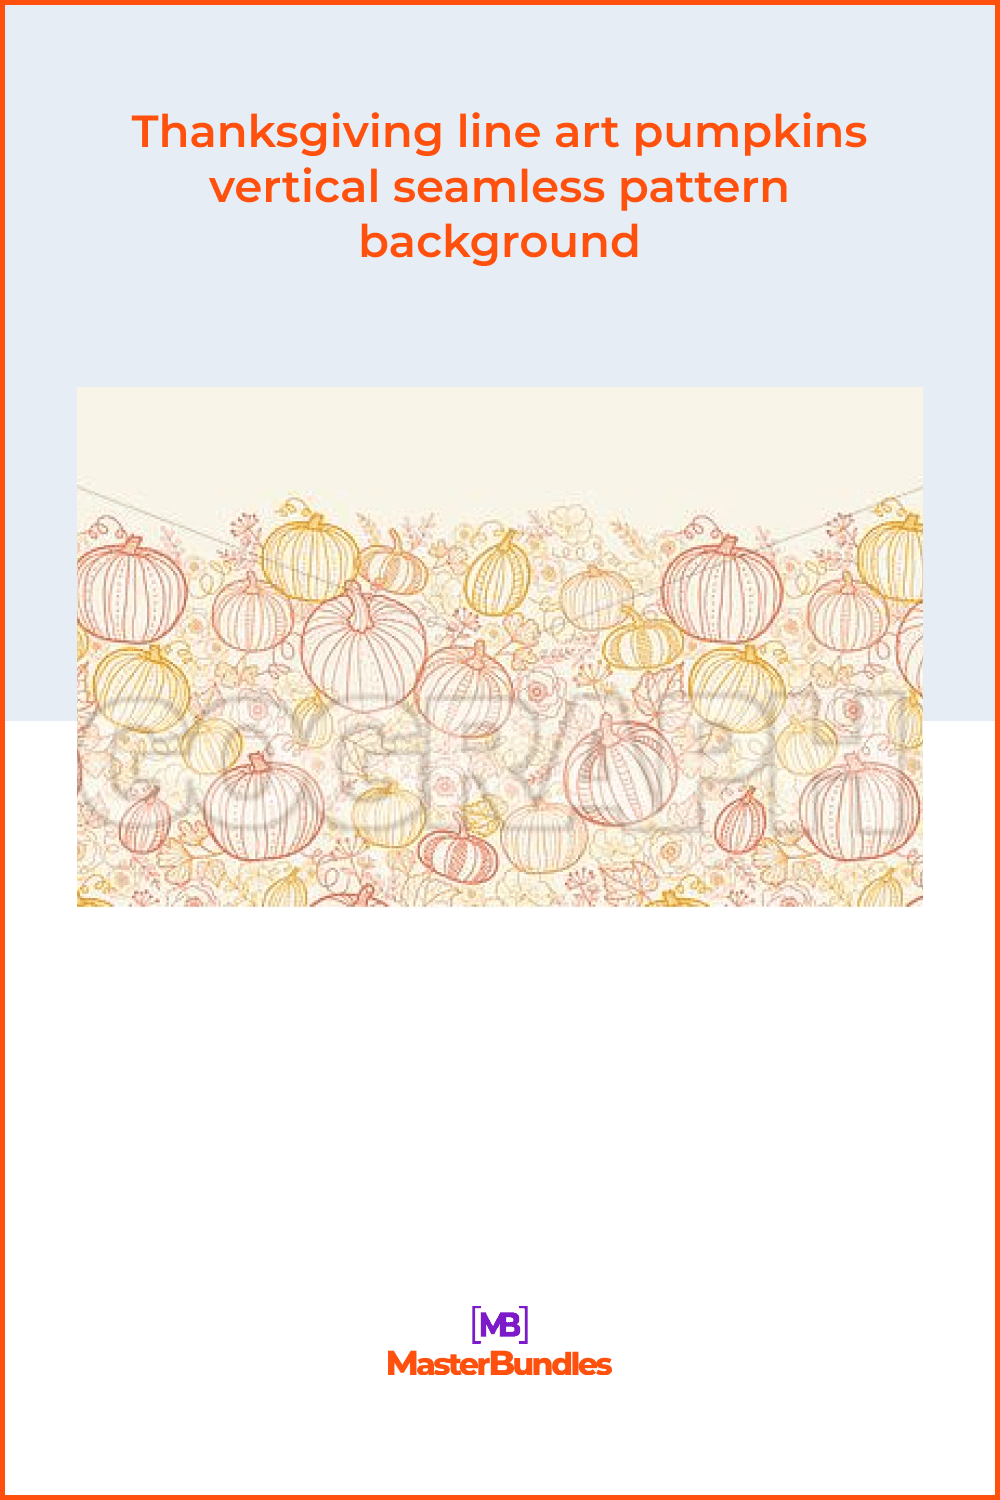 Thanksgiving line art pumpkins vertical seamless pattern background.